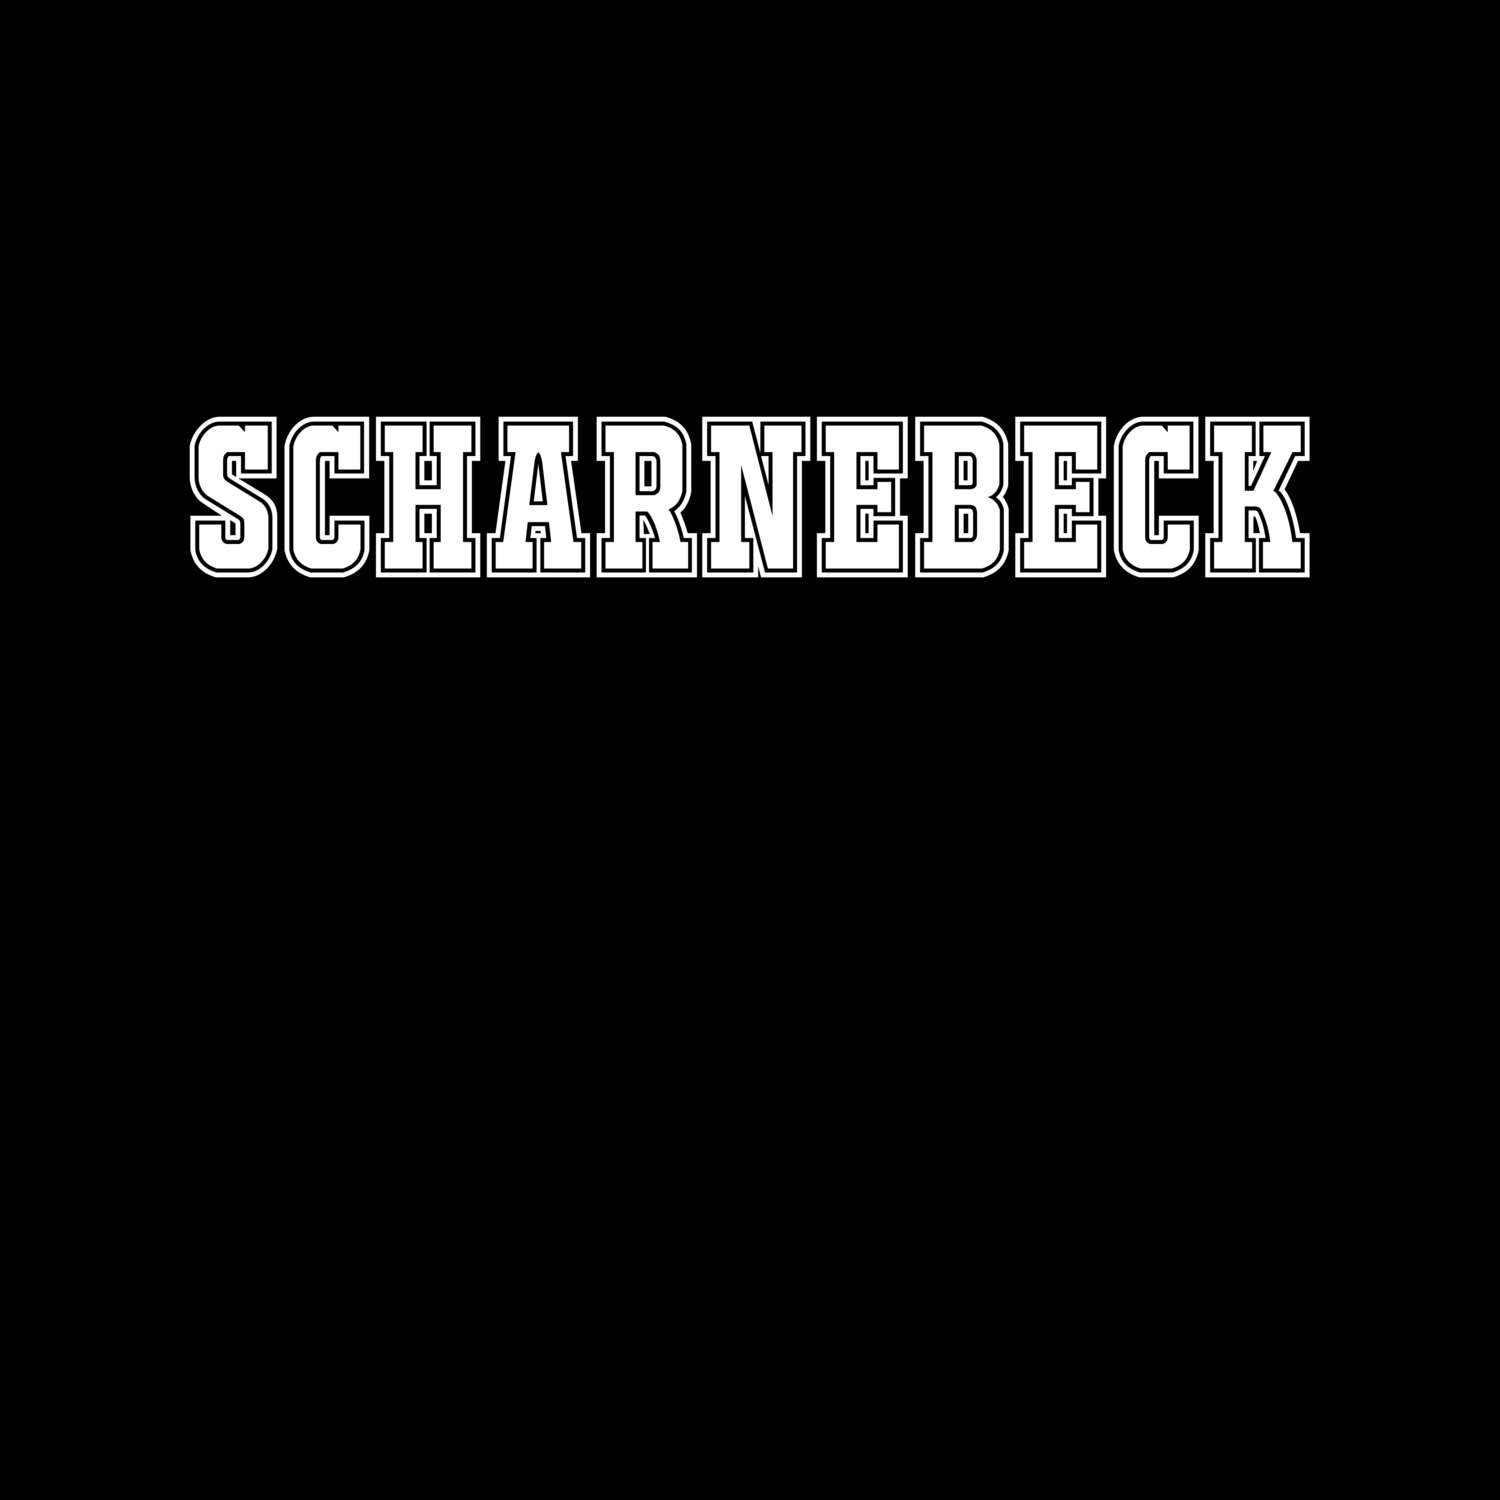 Scharnebeck T-Shirt »Classic«